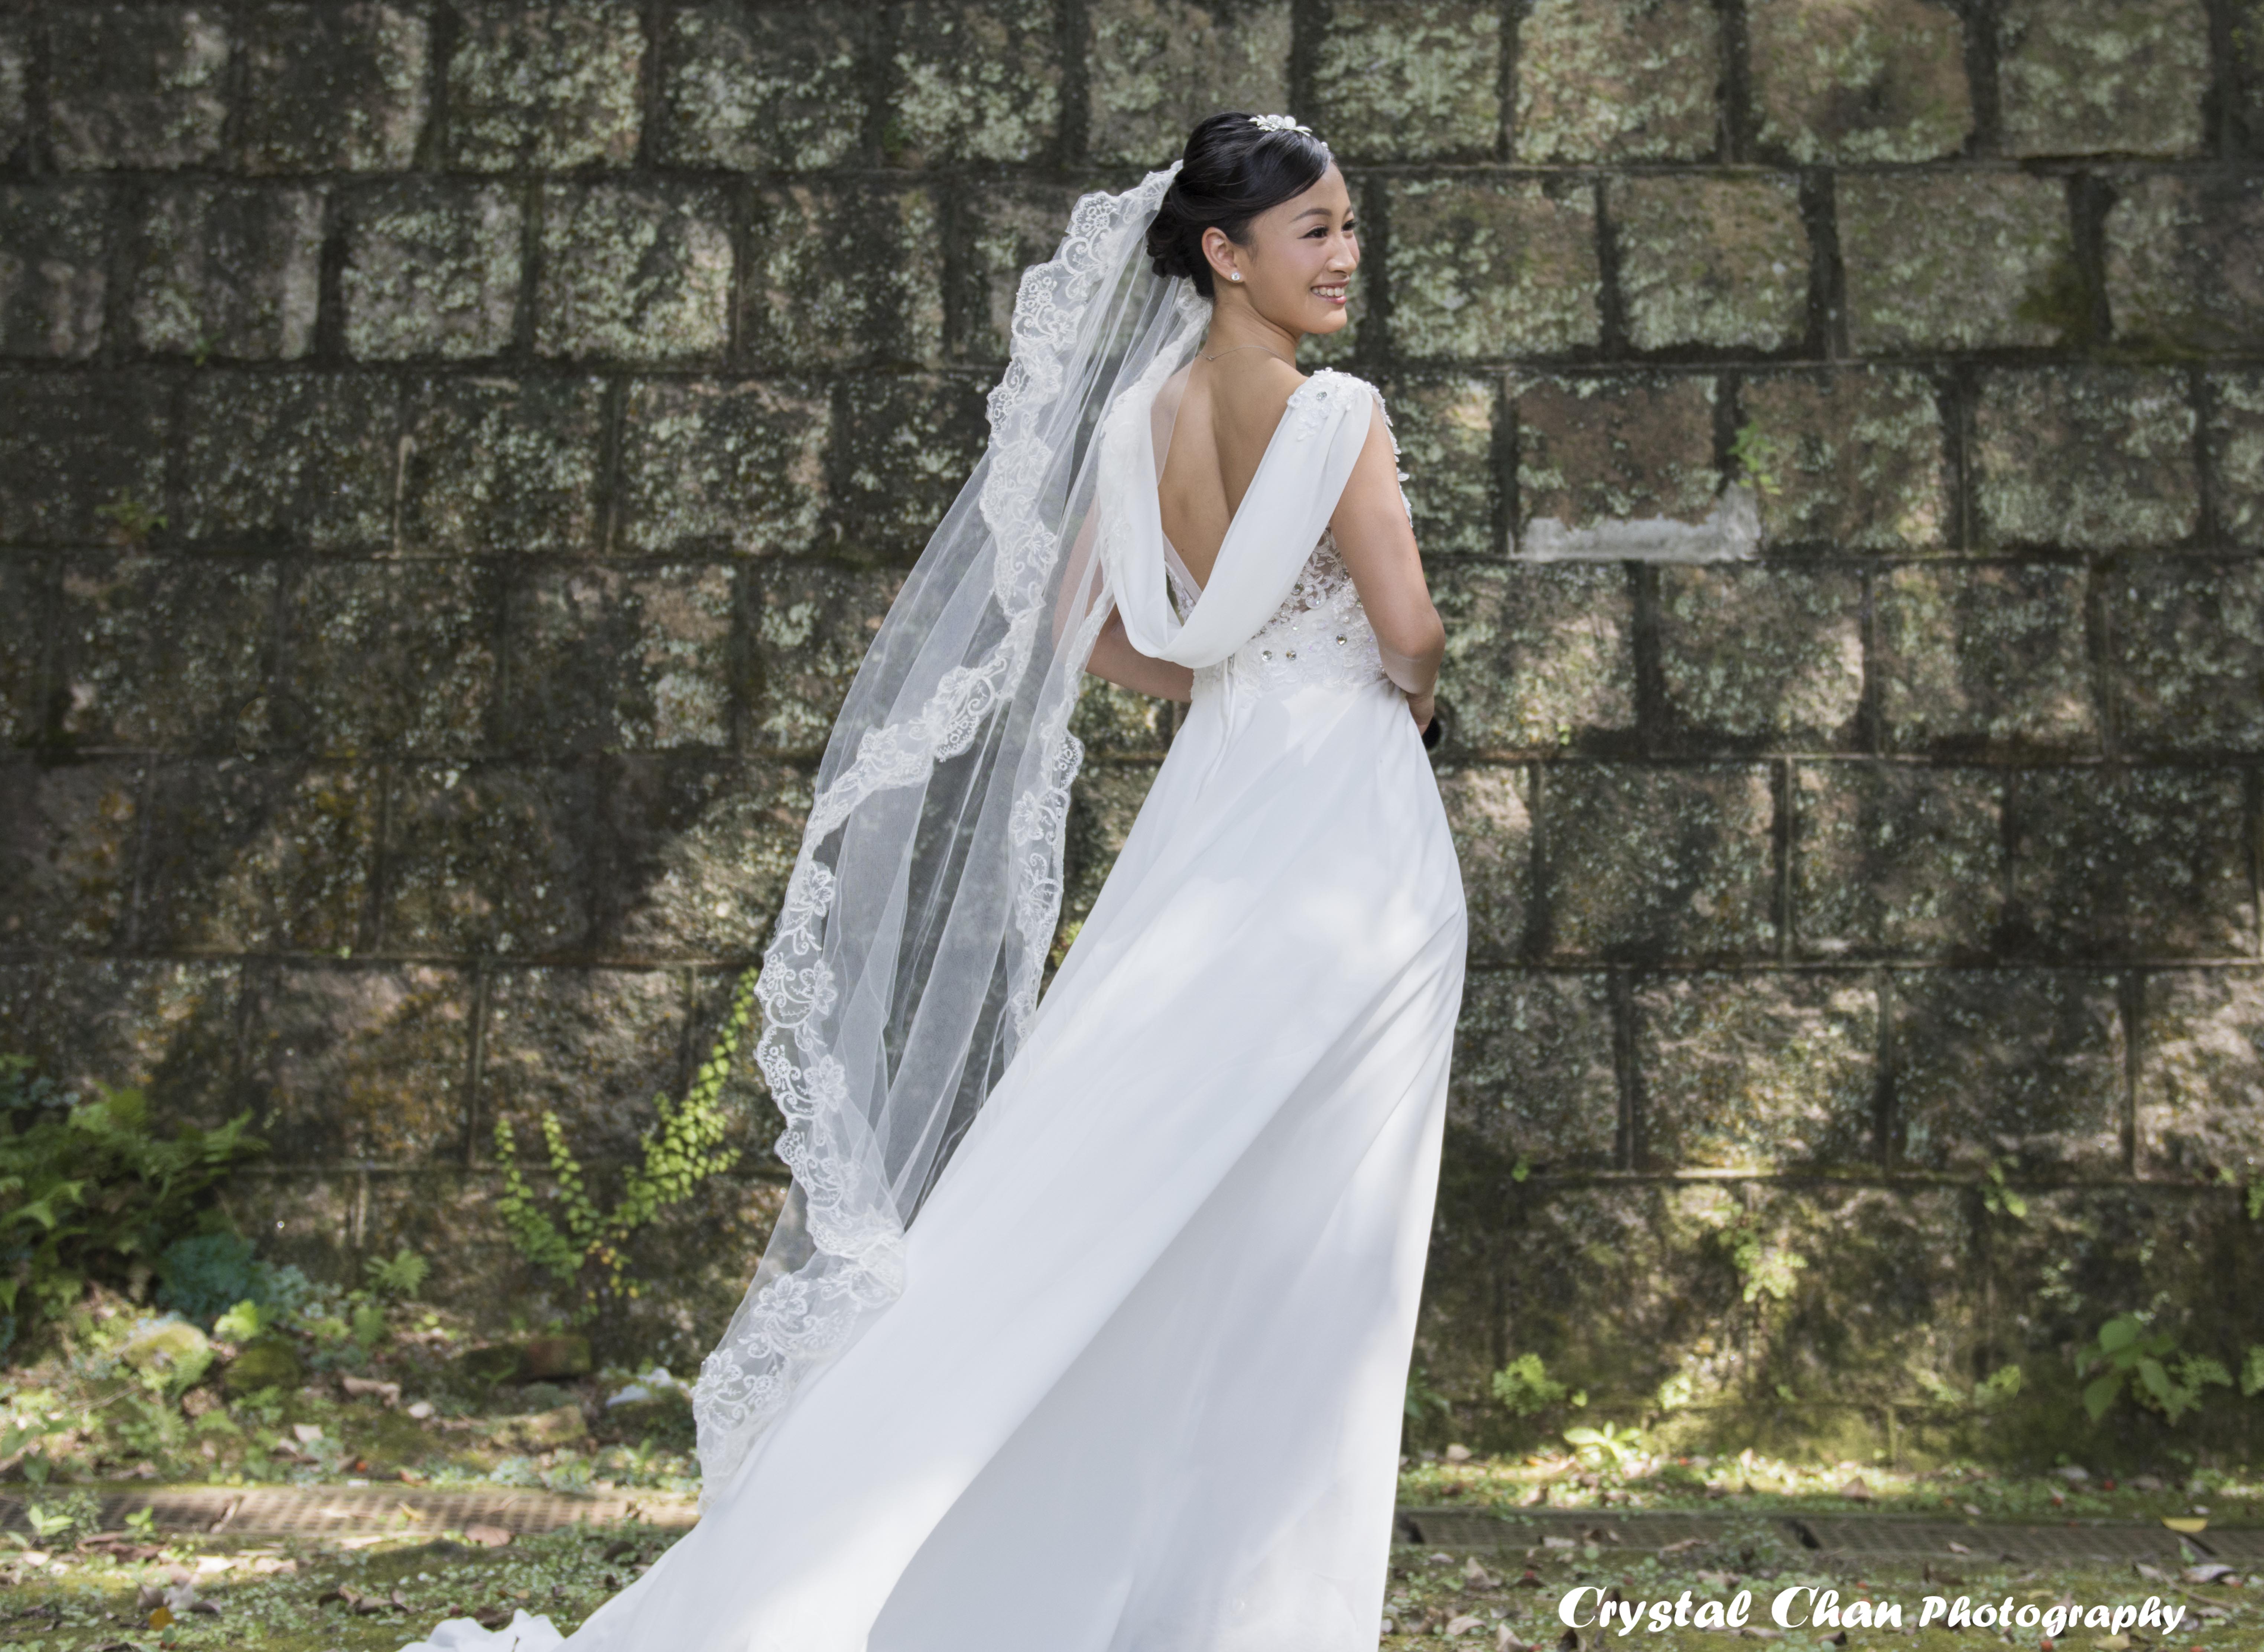 攝影師Crystal Chan工作紀錄: 婚紗外景攝影